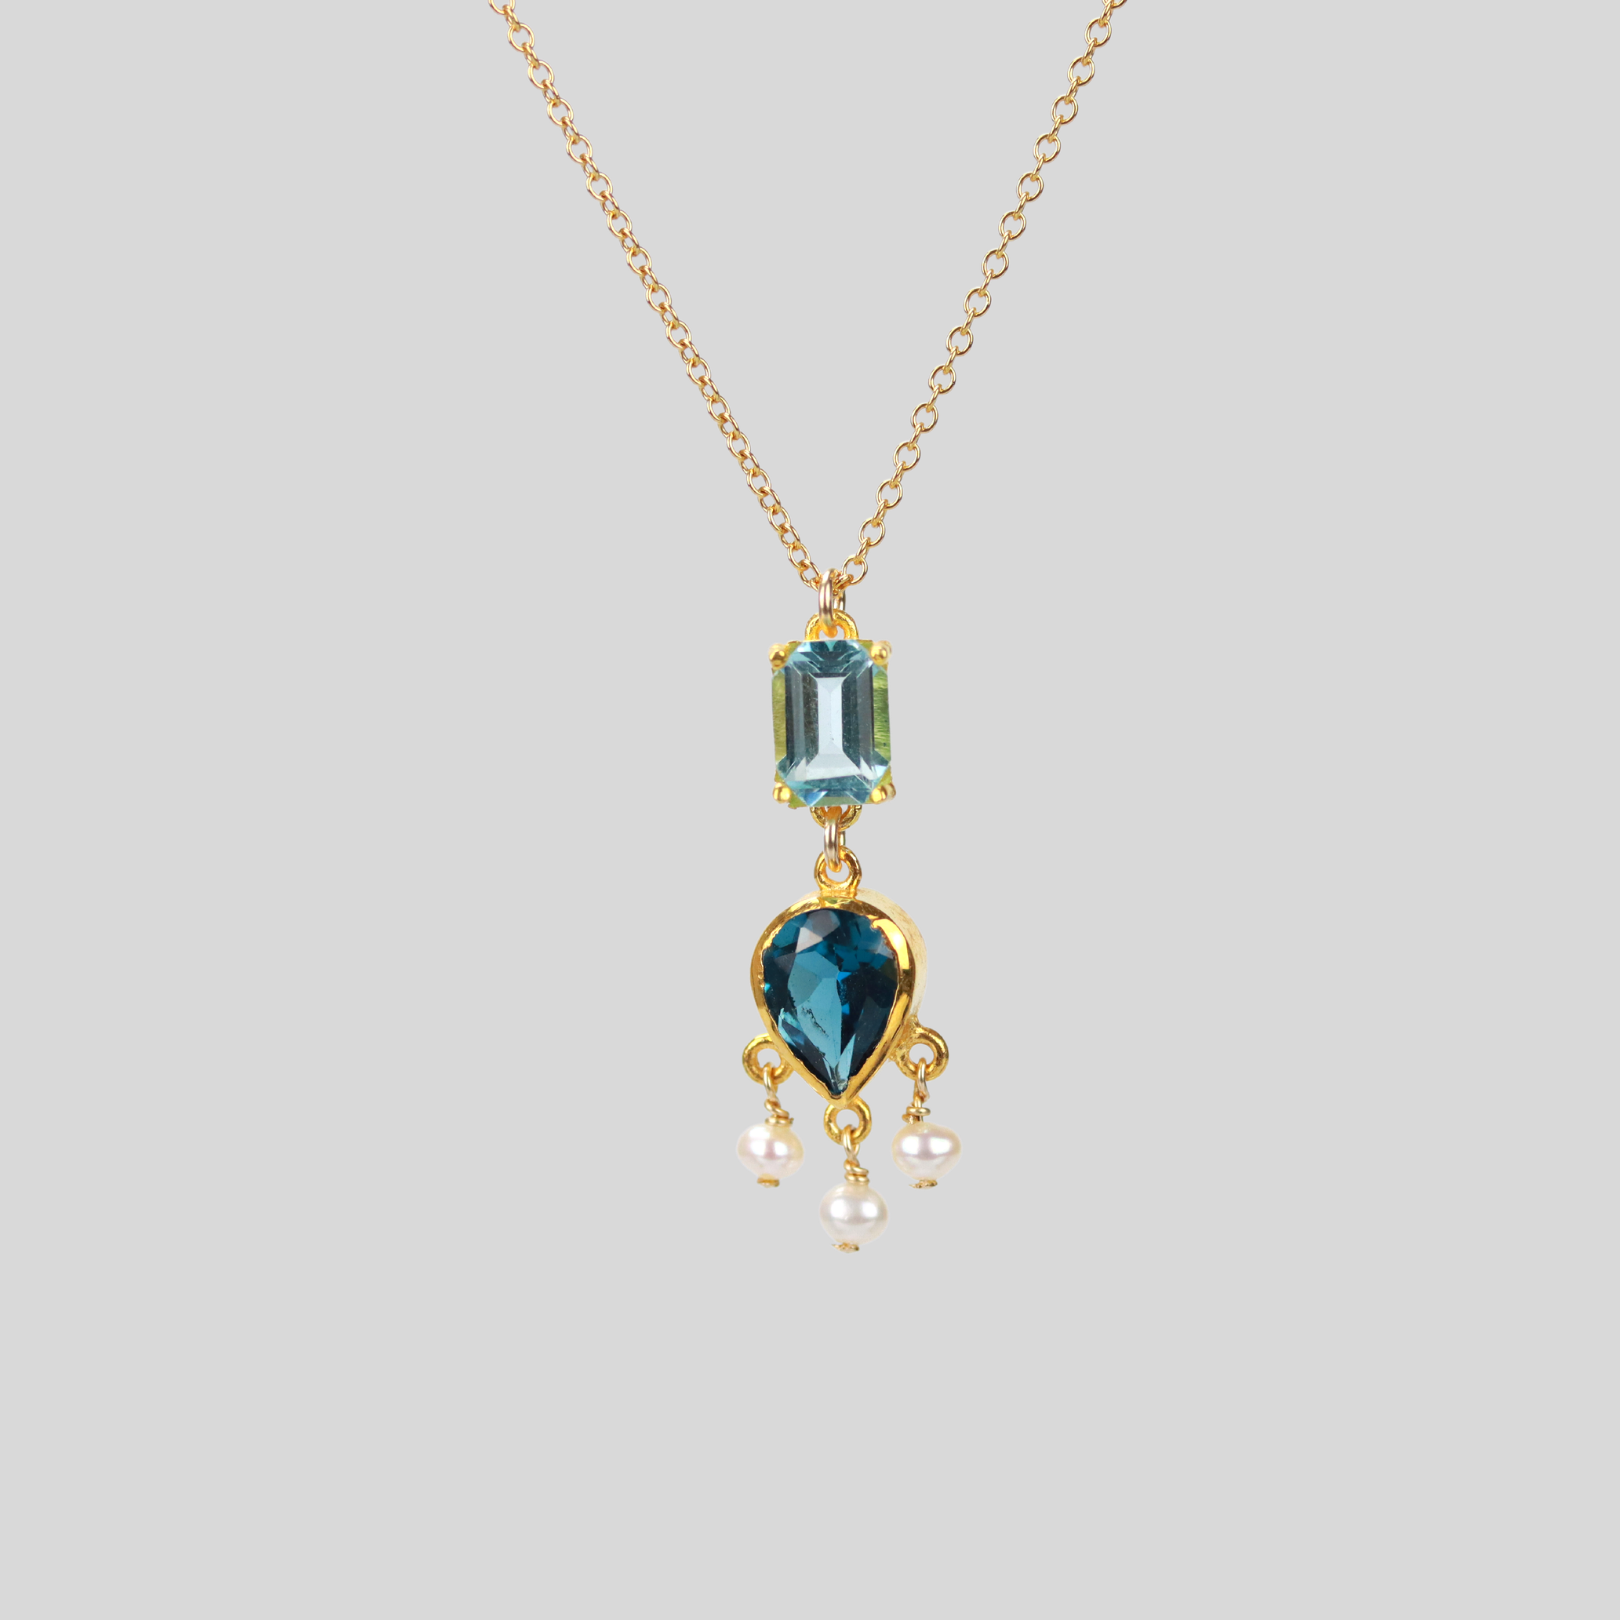 Teardrop and emerald cut blue topaz necklace